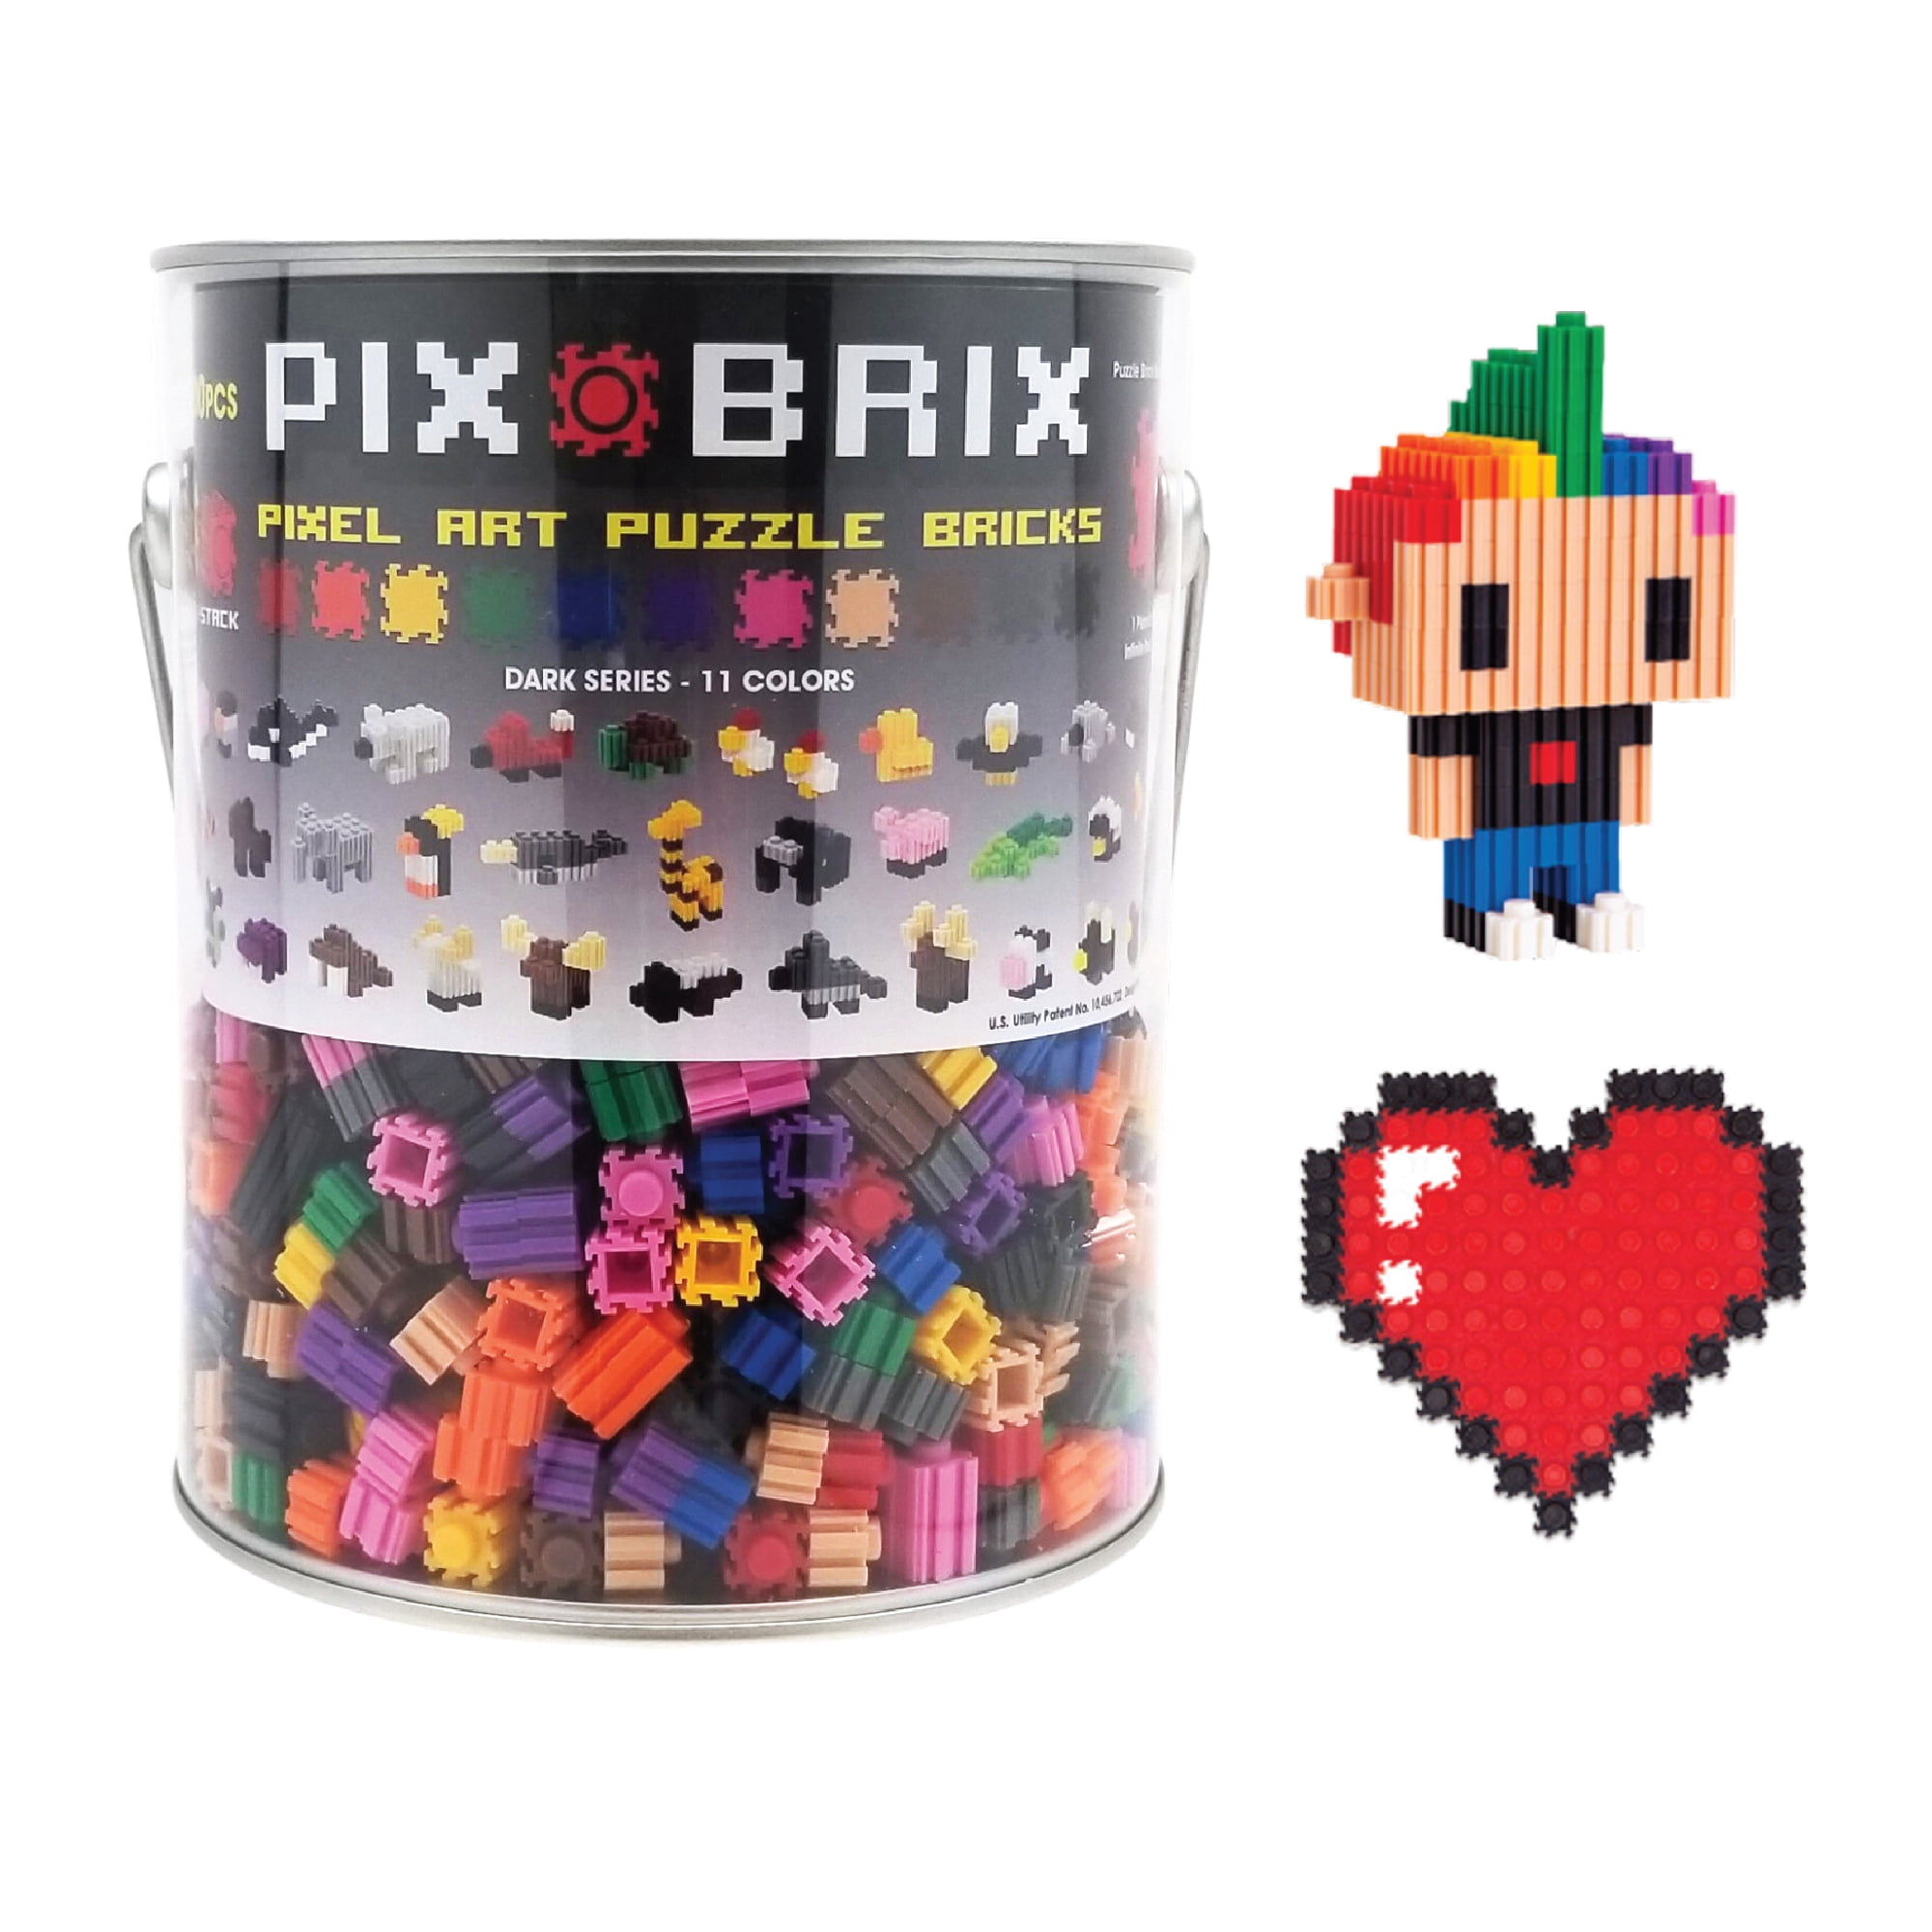 Pix Brix Pixel Art Puzzle Bricks Paint Can, 1,500 Pieces